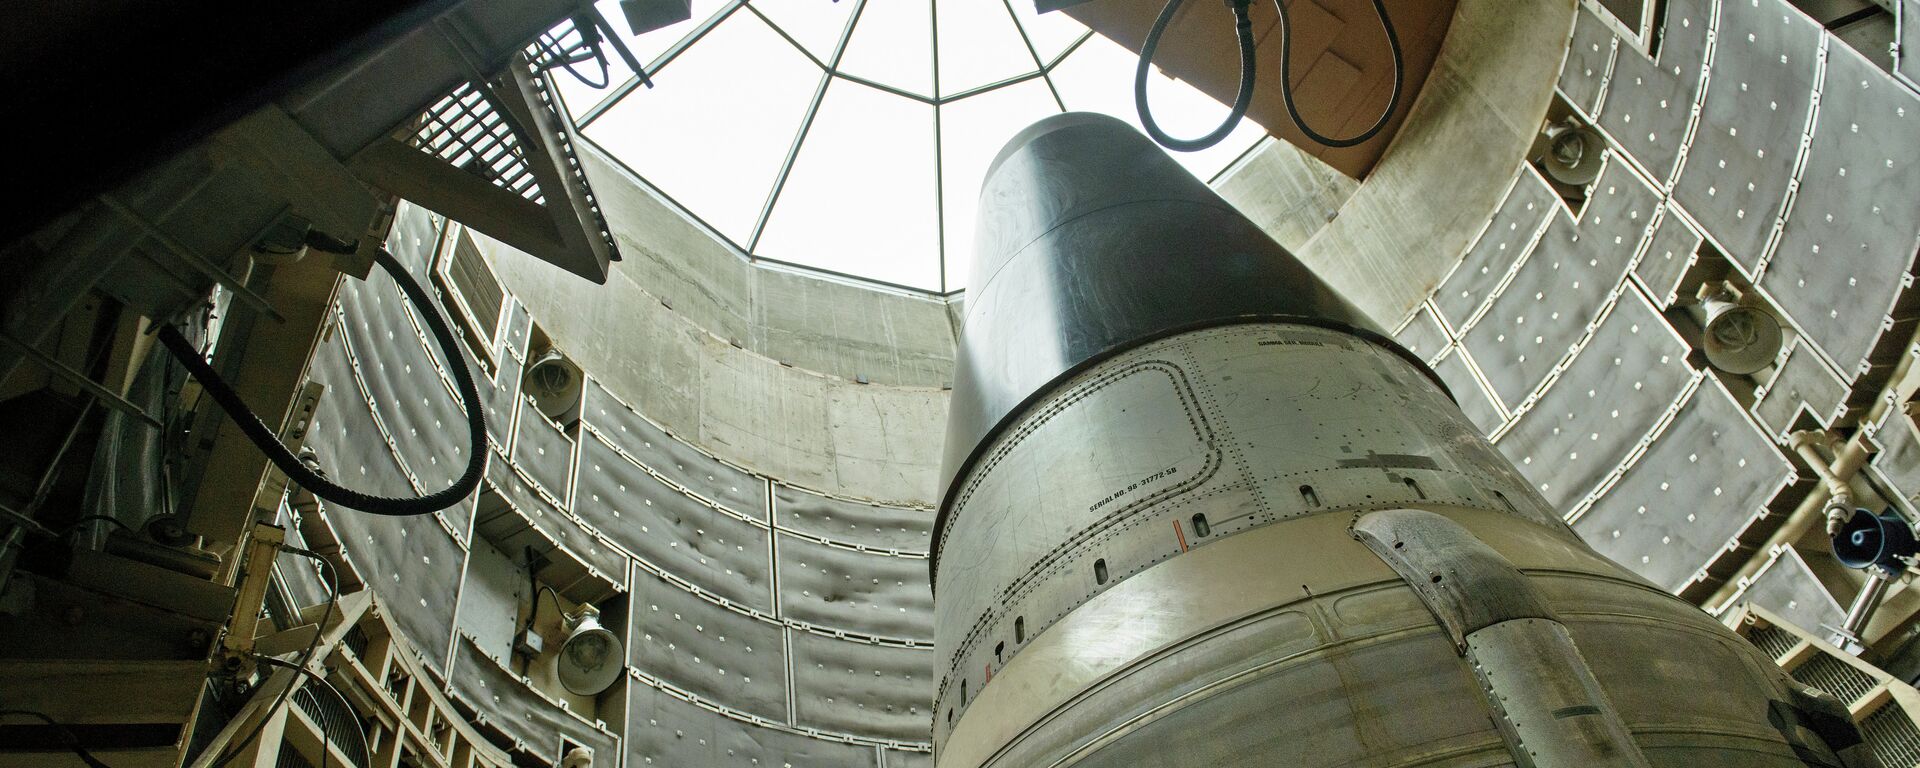 Um míssil nuclear ICBM Titan II desativado é visto em um silo no Missile Museum Titan (imagem referencial) - Sputnik Brasil, 1920, 24.05.2021